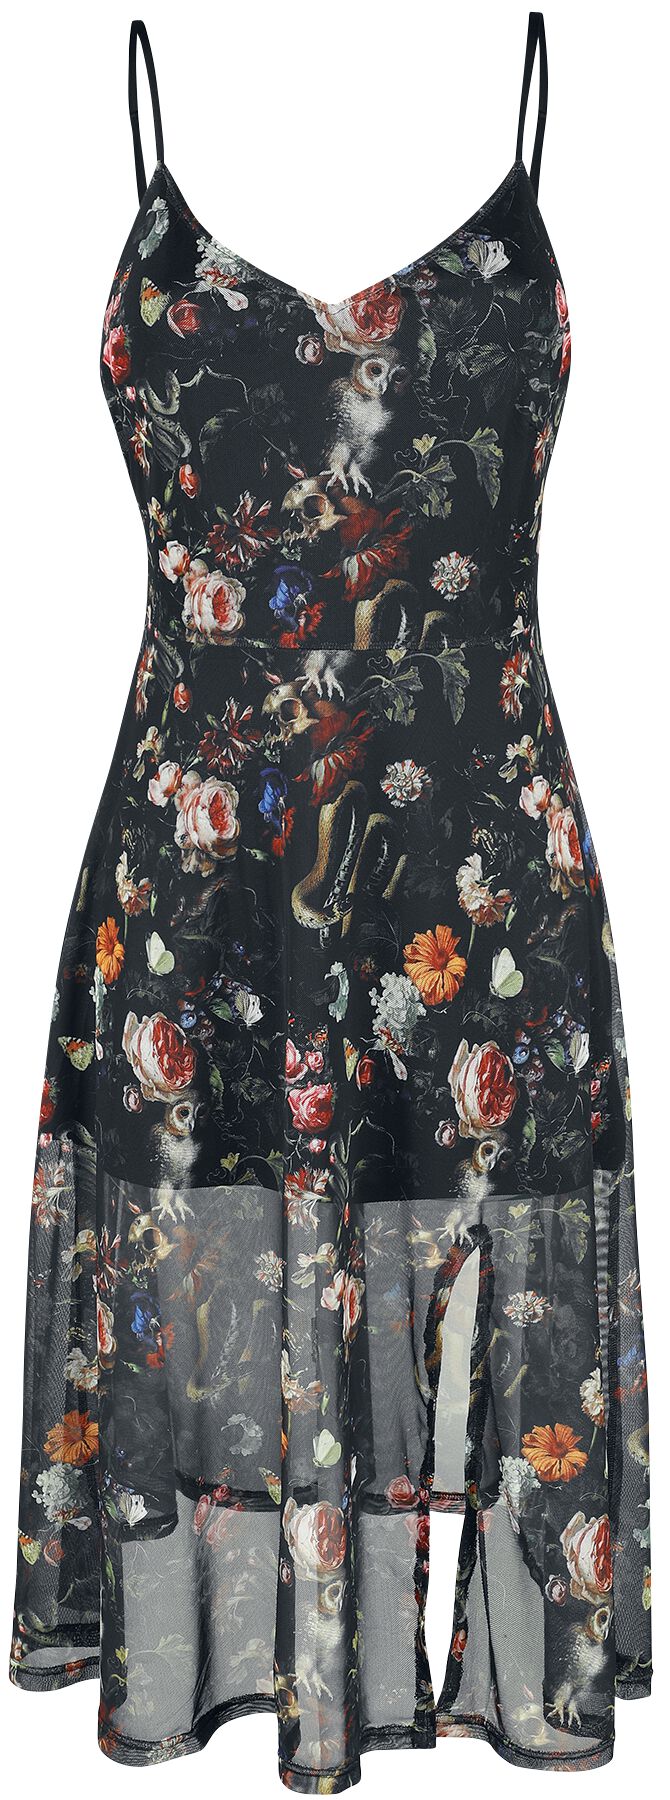 Image of Abito media lunghezza Gothic di Jawbreaker - Night Garden Print Midi Dress - L a 3XL - Donna - multicolore